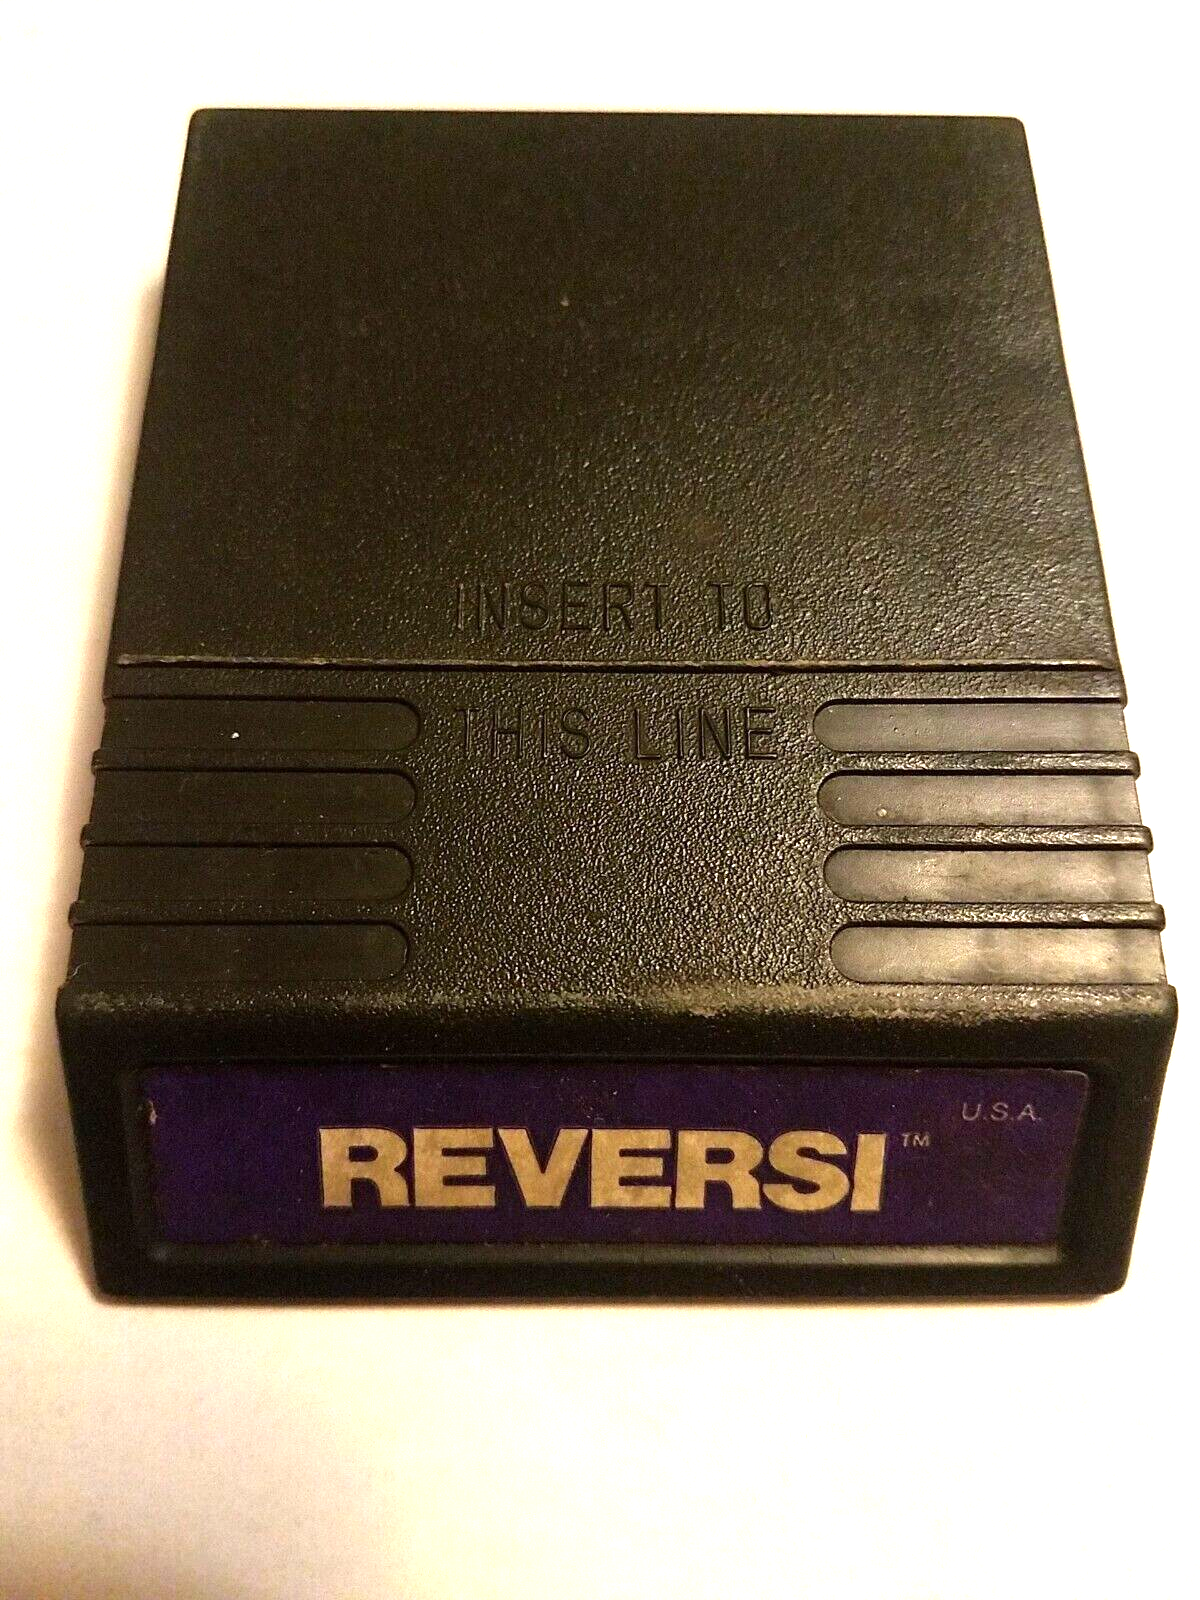 Reversi - Intellivision